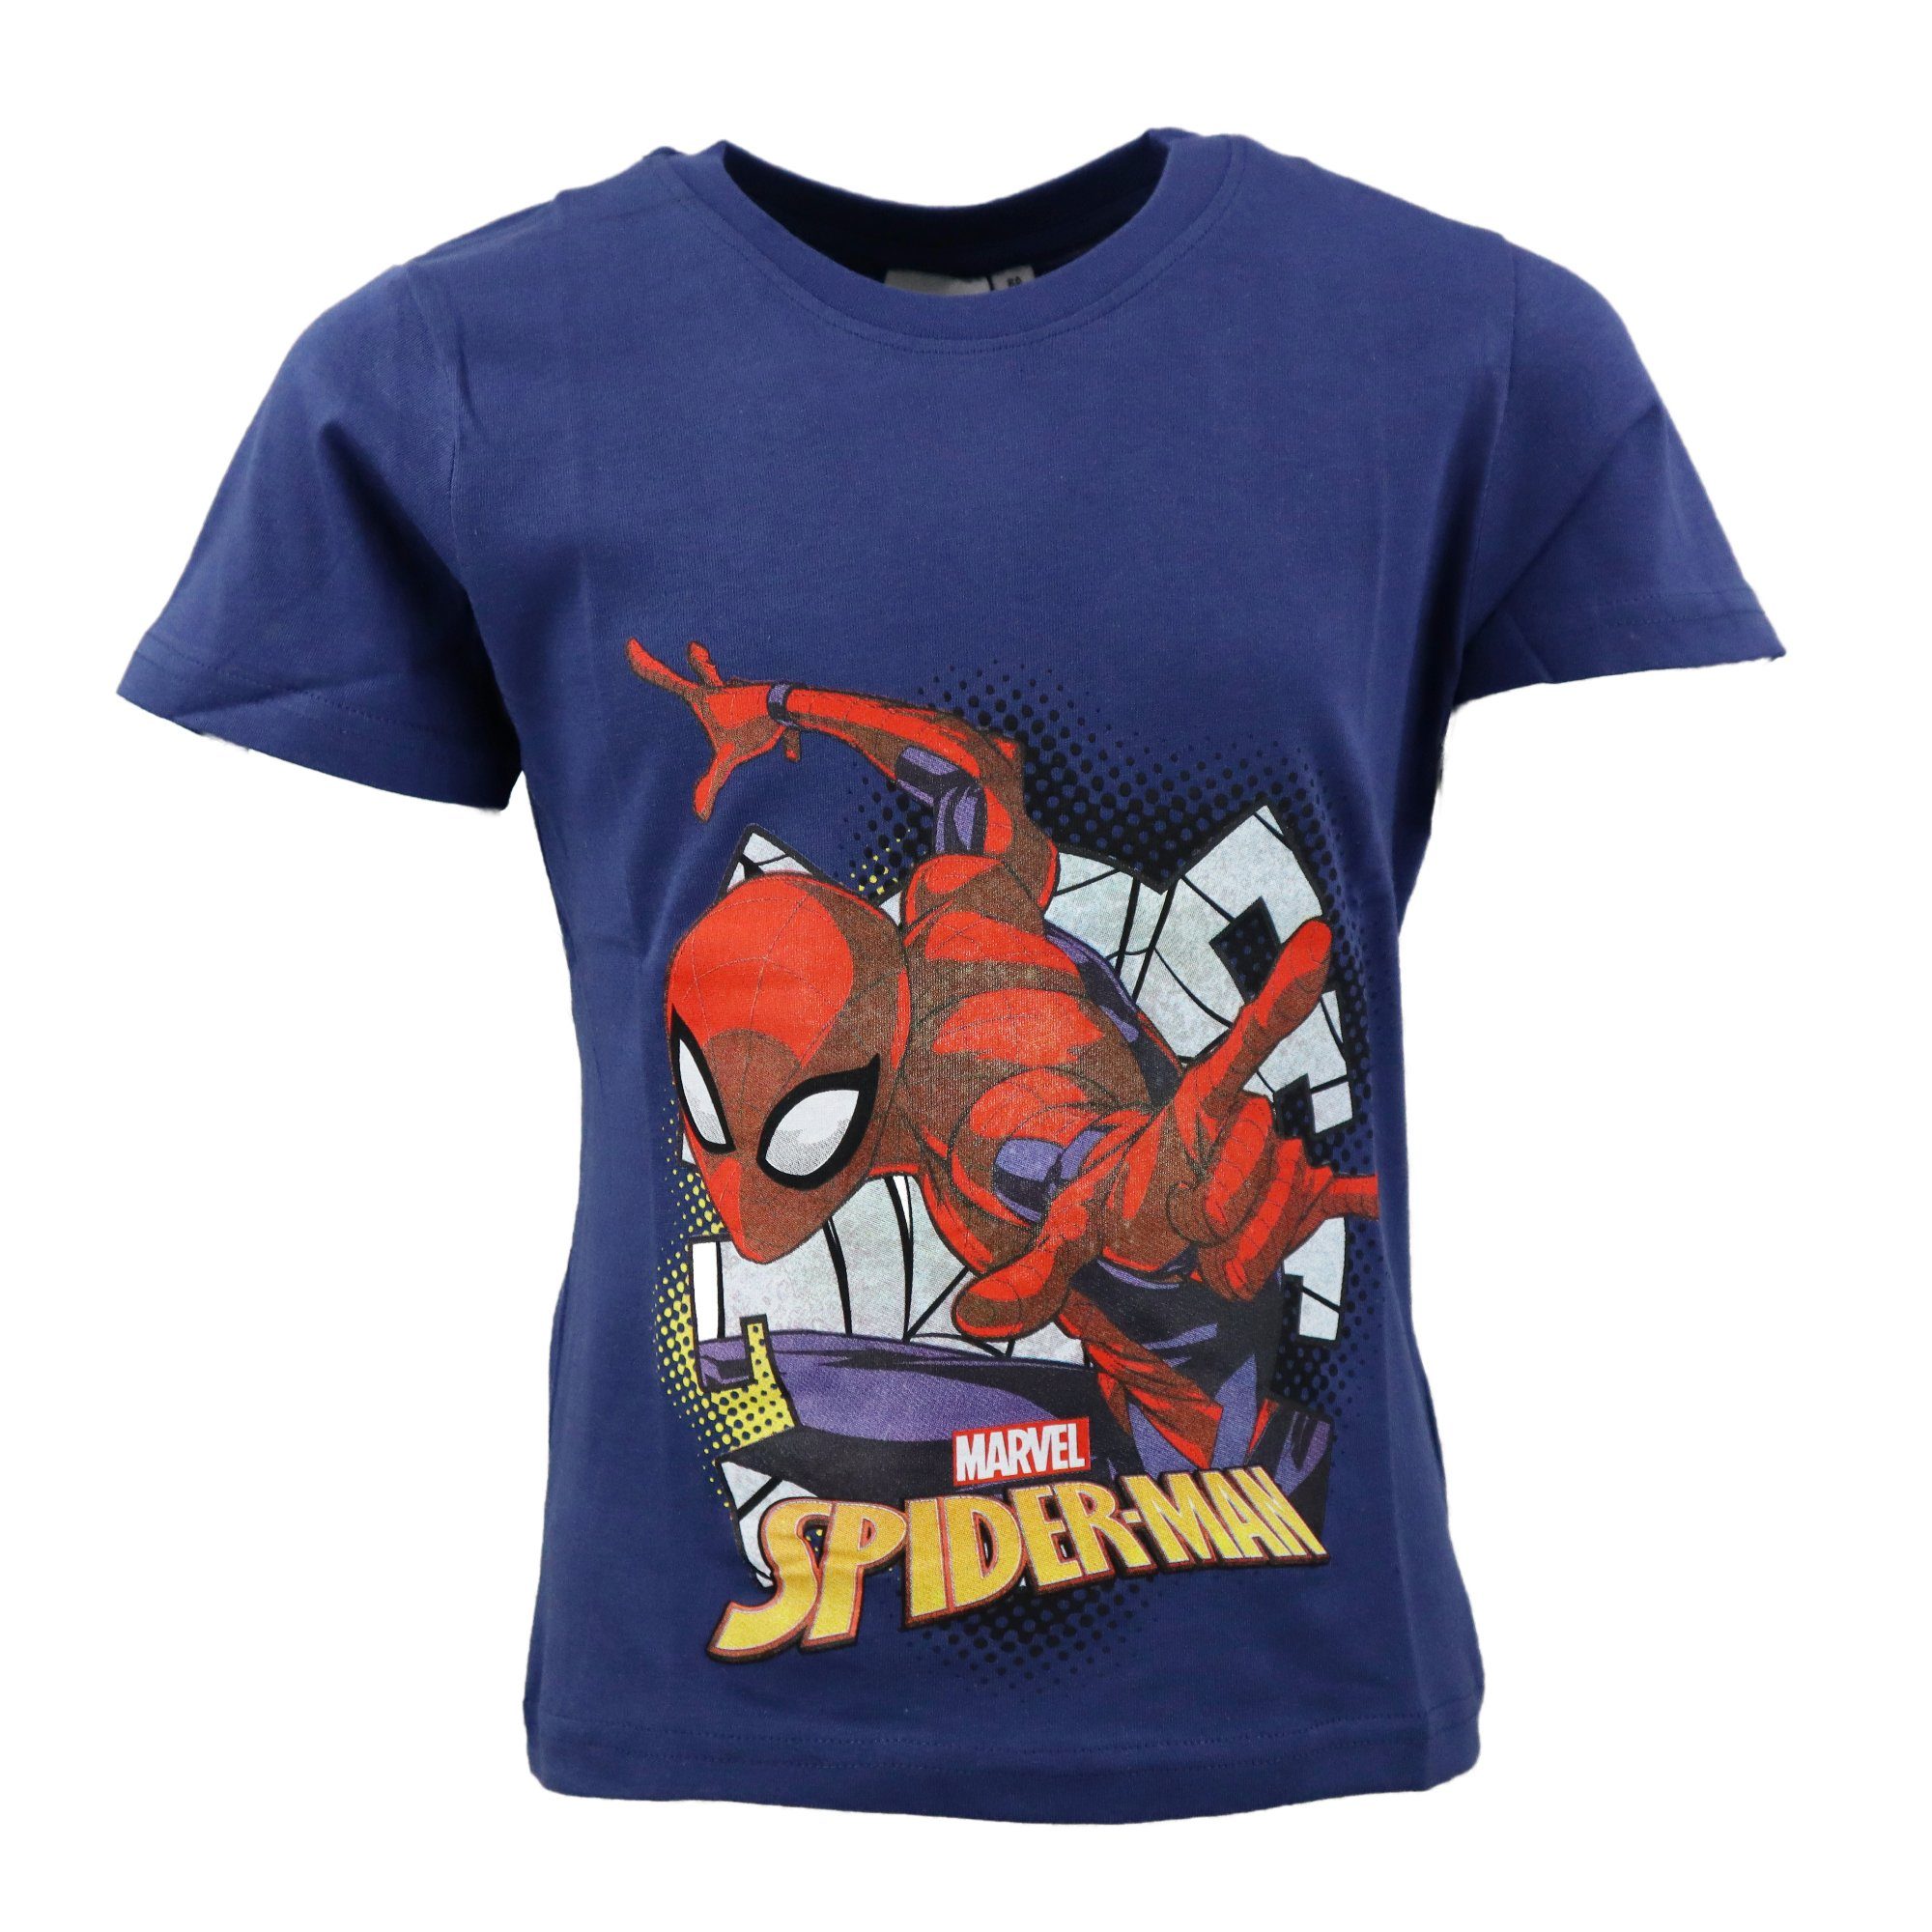 MARVEL Print-Shirt Spiderman T-Shirt kurzarm Kinder Jungen Shirt Gr. 98 bis 128, 100% Baumwolle